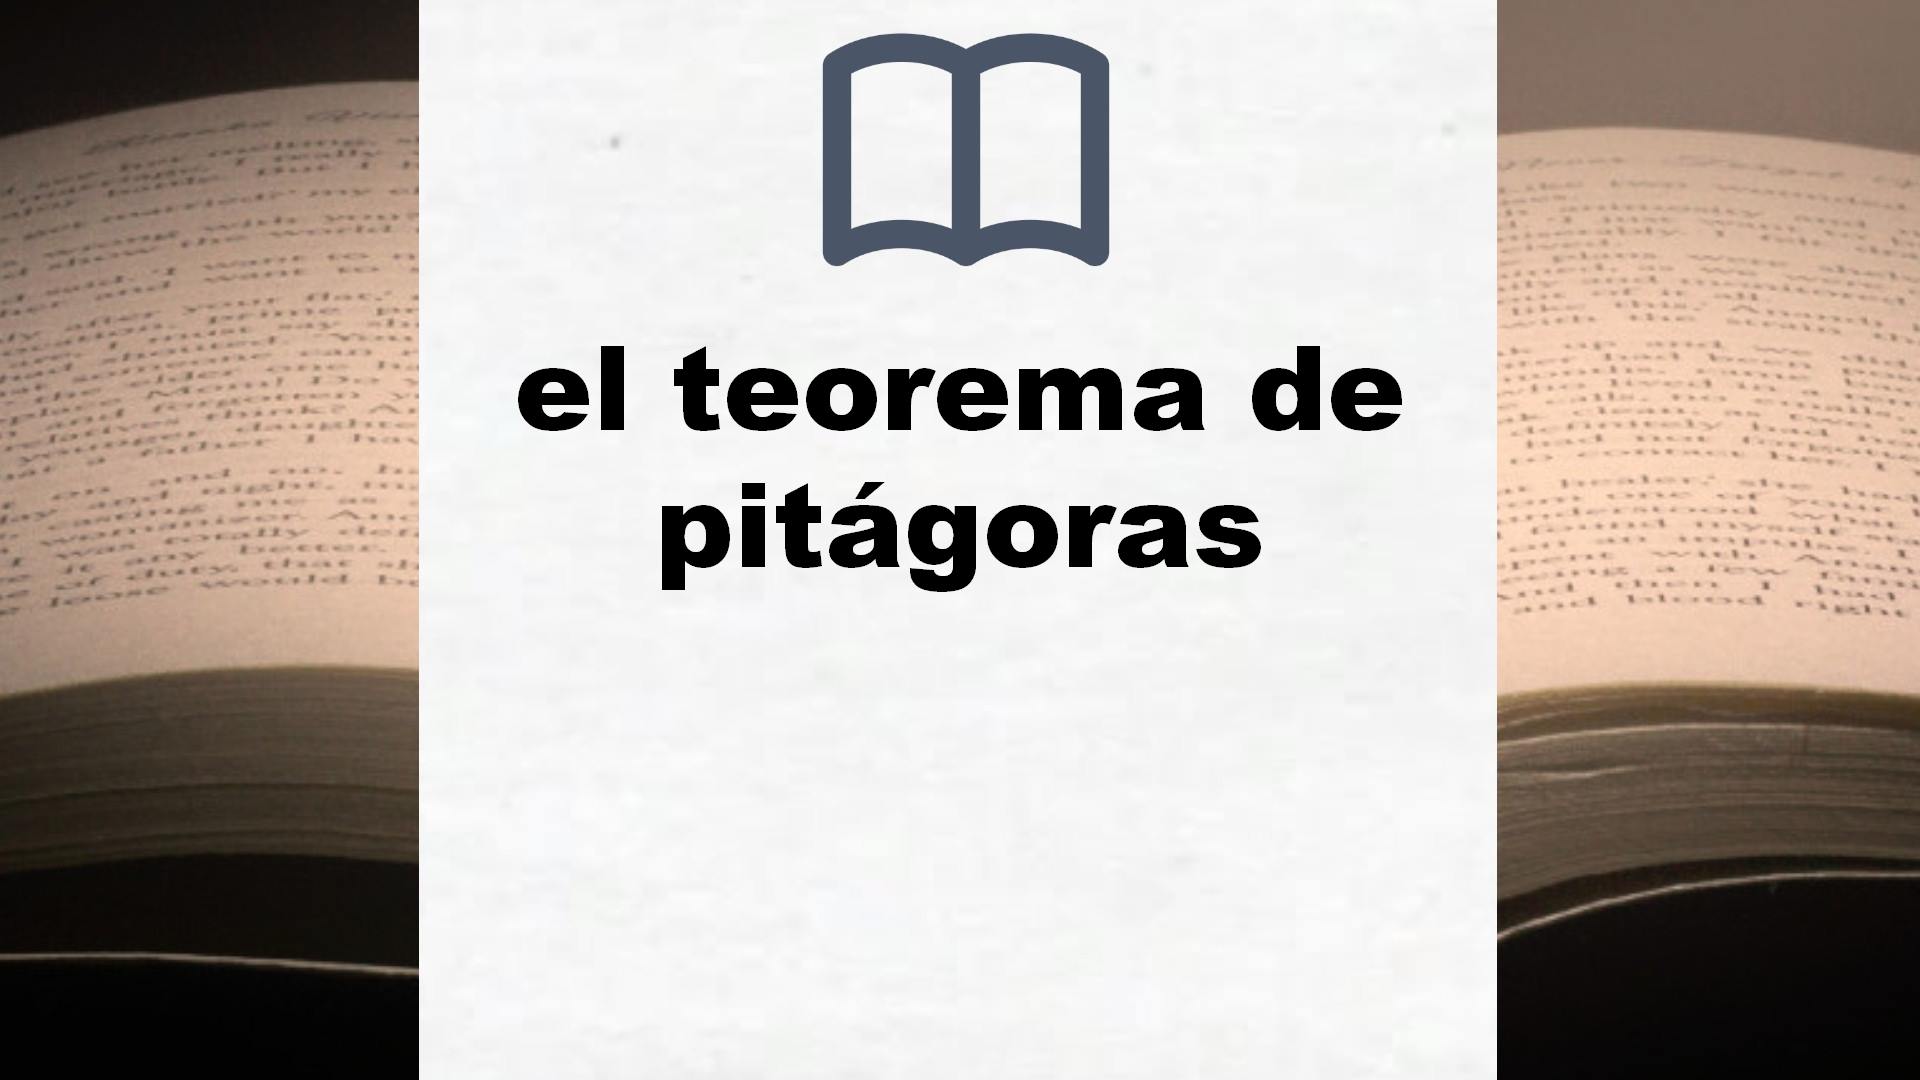 Libros sobre el teorema de pitágoras